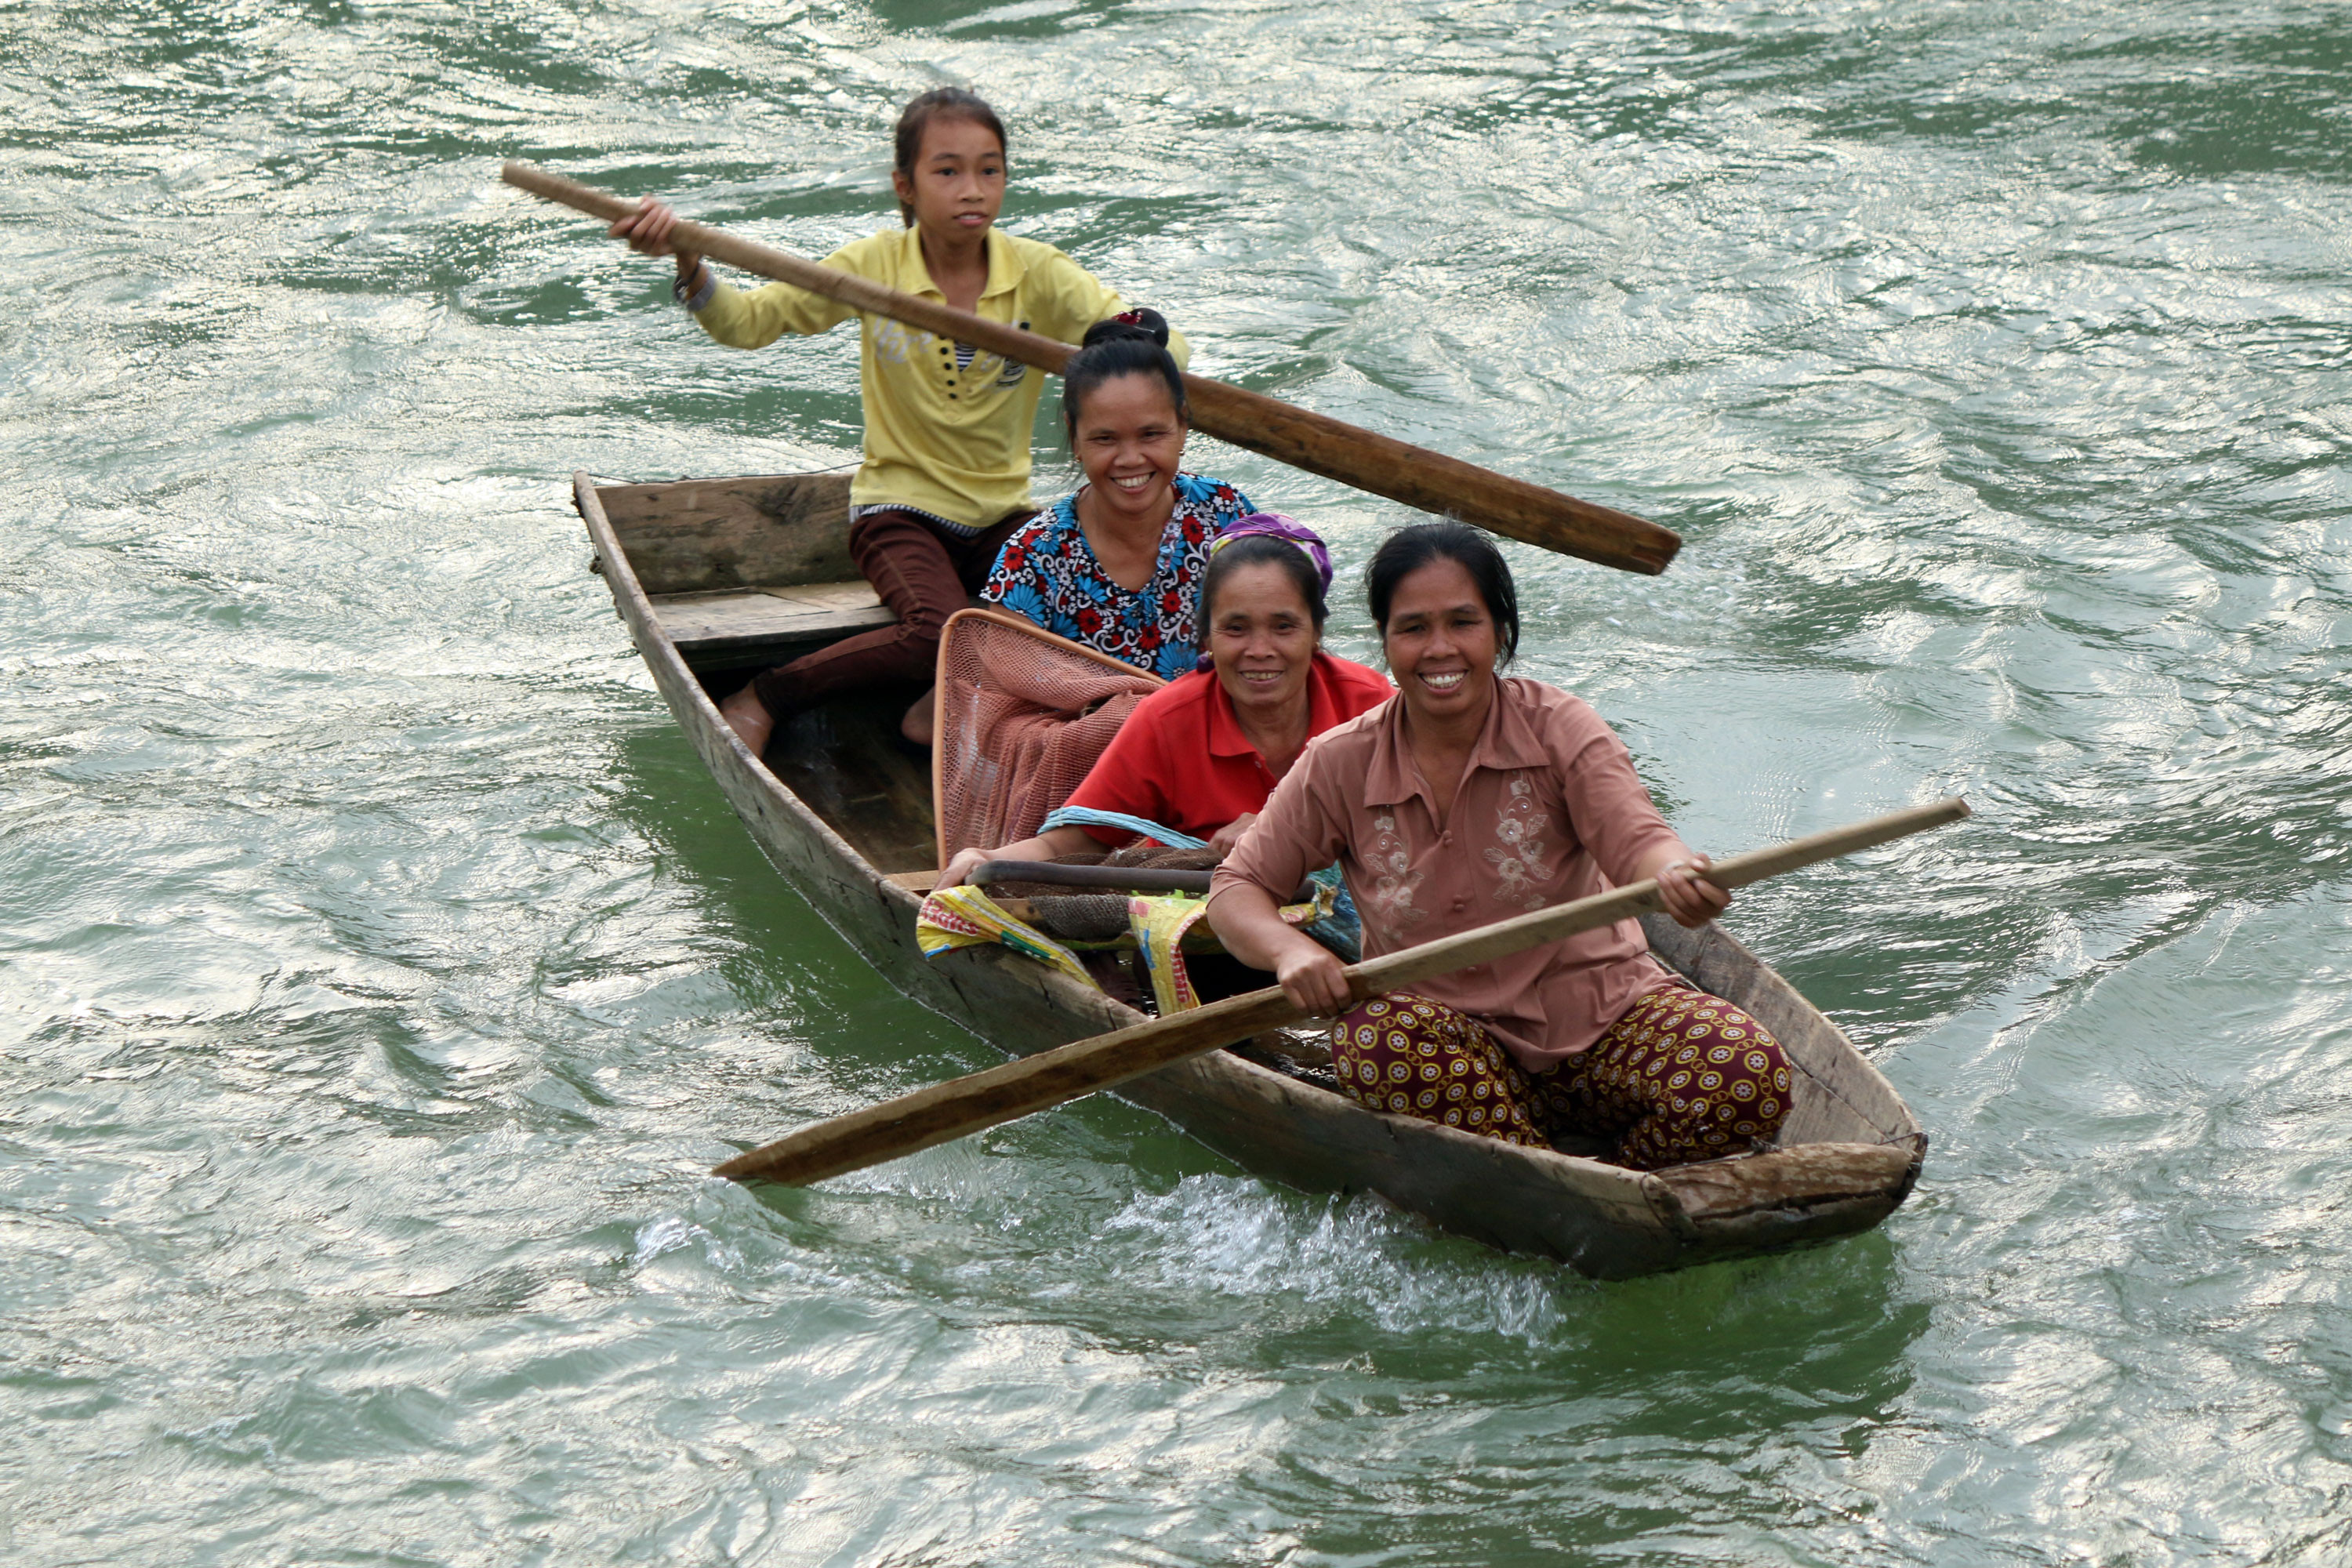 Những người phụ nữ vùng cao xứ Nghệ đều gắn bó với từng dòng sông con suối bởi nơi đây là nguồn cung cấp thức ăn hàng ngày cho gia đình họ. Cũng chính vì vậy hình ảnh những người phụ nữ bươn chải trên sông nước từ lâu vốn đã rất quen thuộc. Ảnh: Đào Thọ